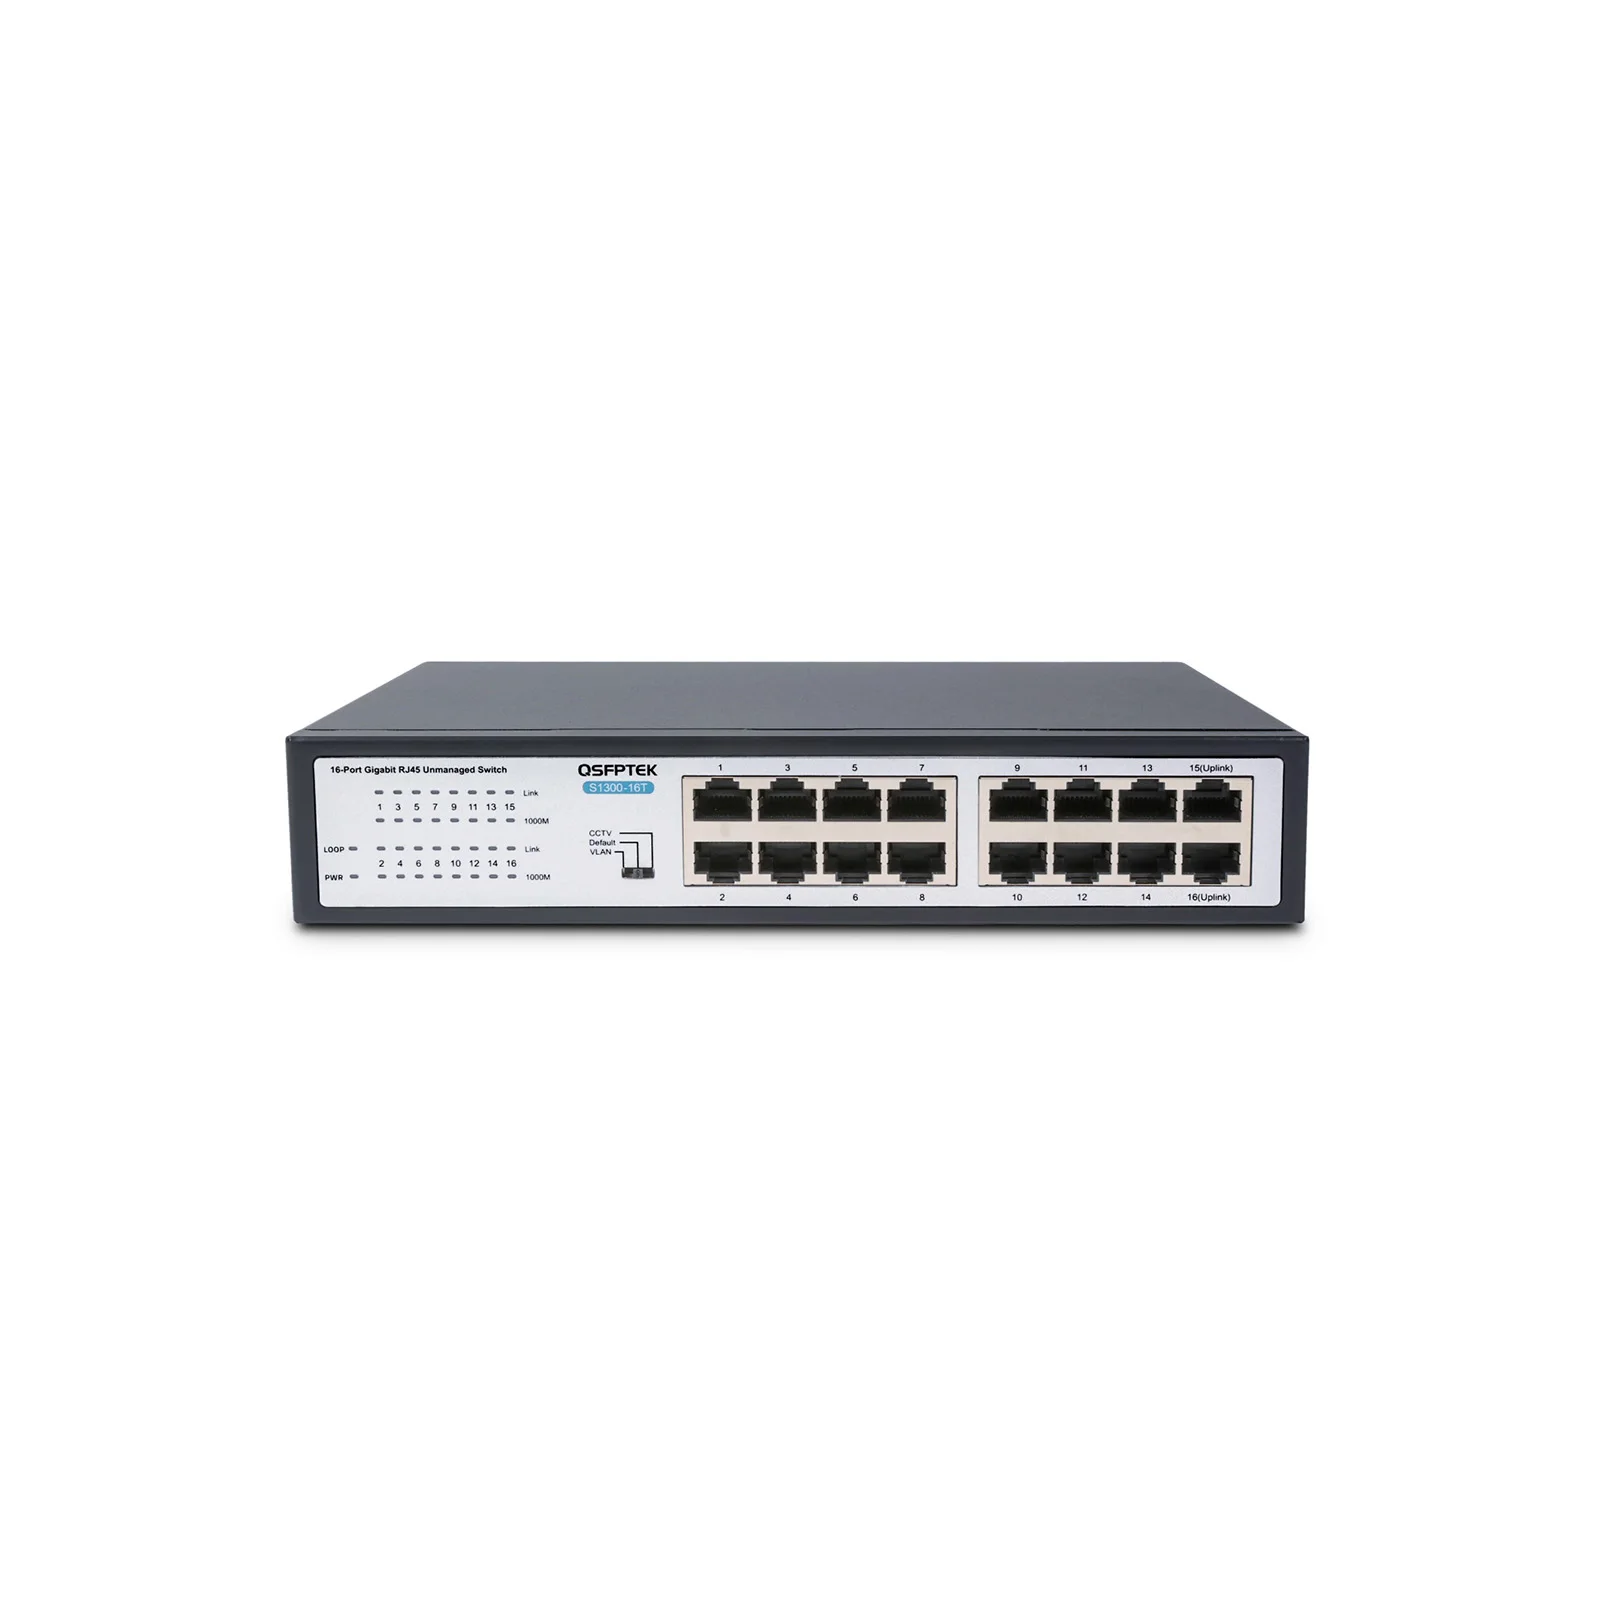 S1300-16T, 16-Port Gigabit Ethernet Unmanaged L2 Switch, 16x 100/1000BASE-T  RJ45 Ports, Fanless